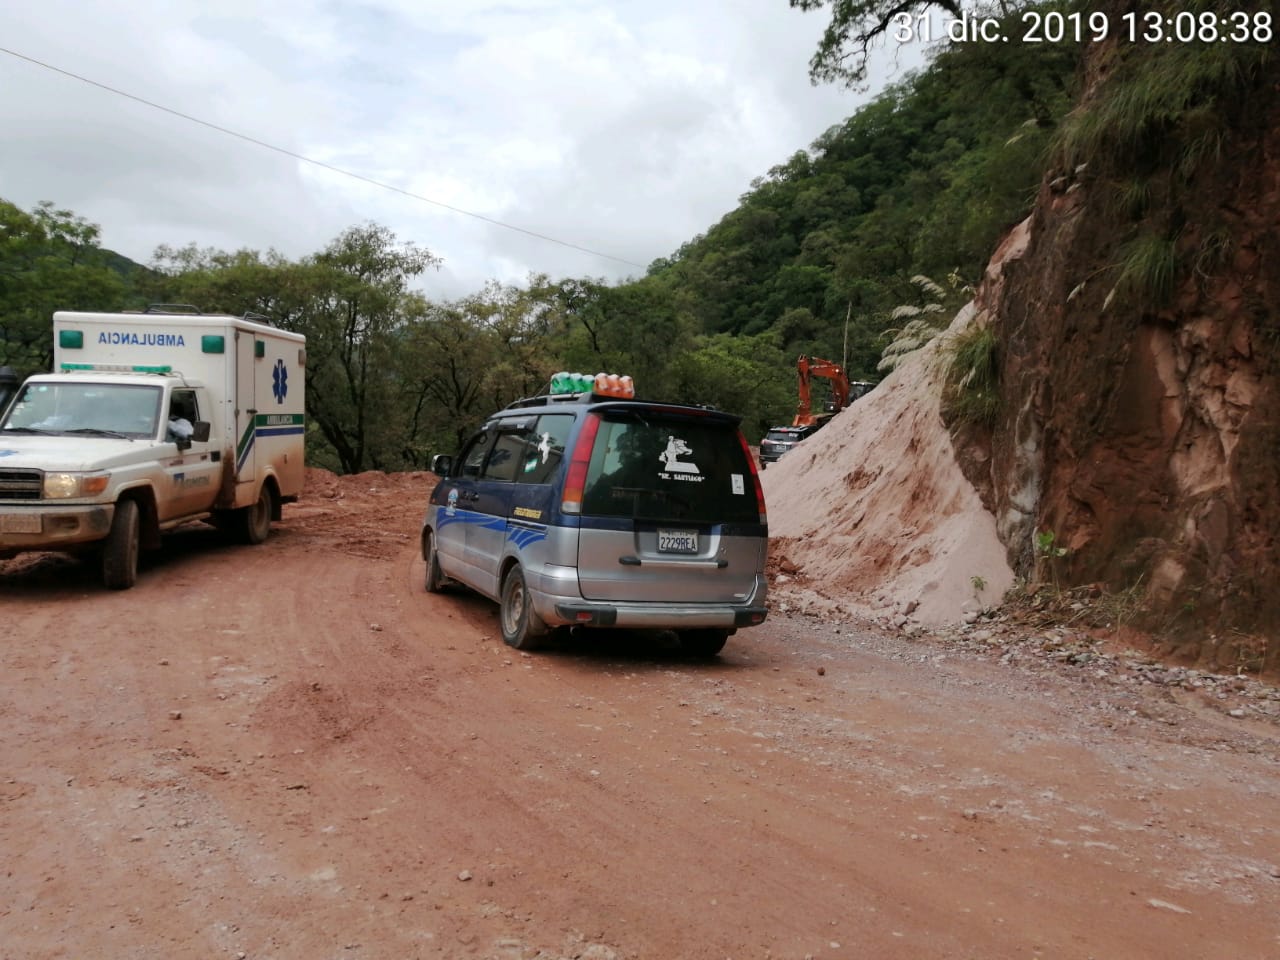 Carretera al Chaco se encuentra transitable con precaución